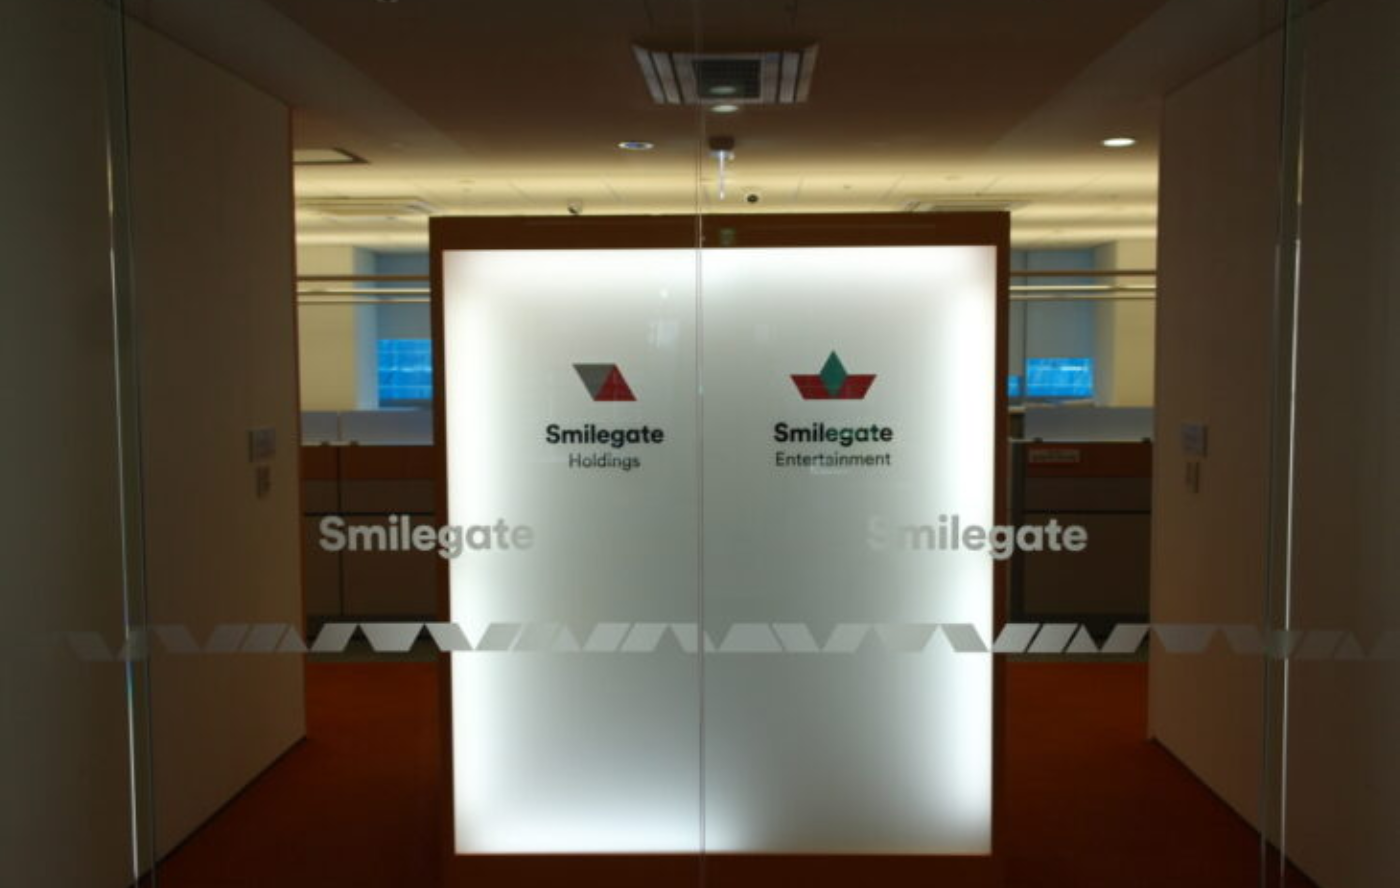 Smilegate, nhà phát triển CF vừa đóng cửa chi nhánh Barcelona